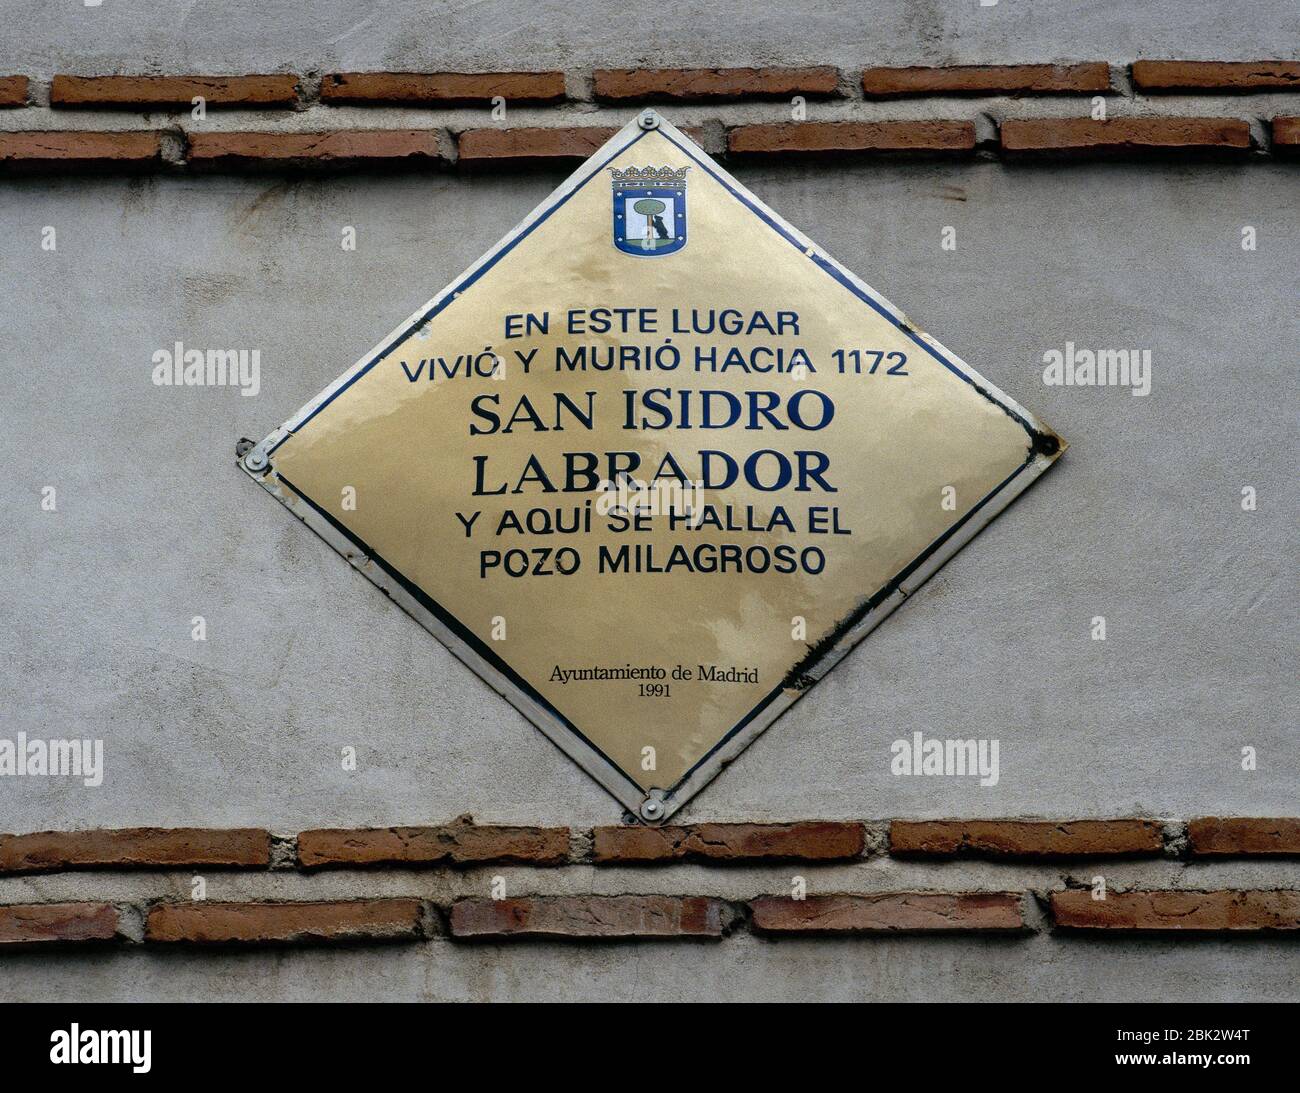 St. Isidore der Arbeiter (c. 1070-1130). Gedenktafel am Rathaus von Madrid im Jahr 1991, an der Fassade des Hauses, in dem der heilige lebte und starb um 1172. Madrid, Spanien. Stockfoto